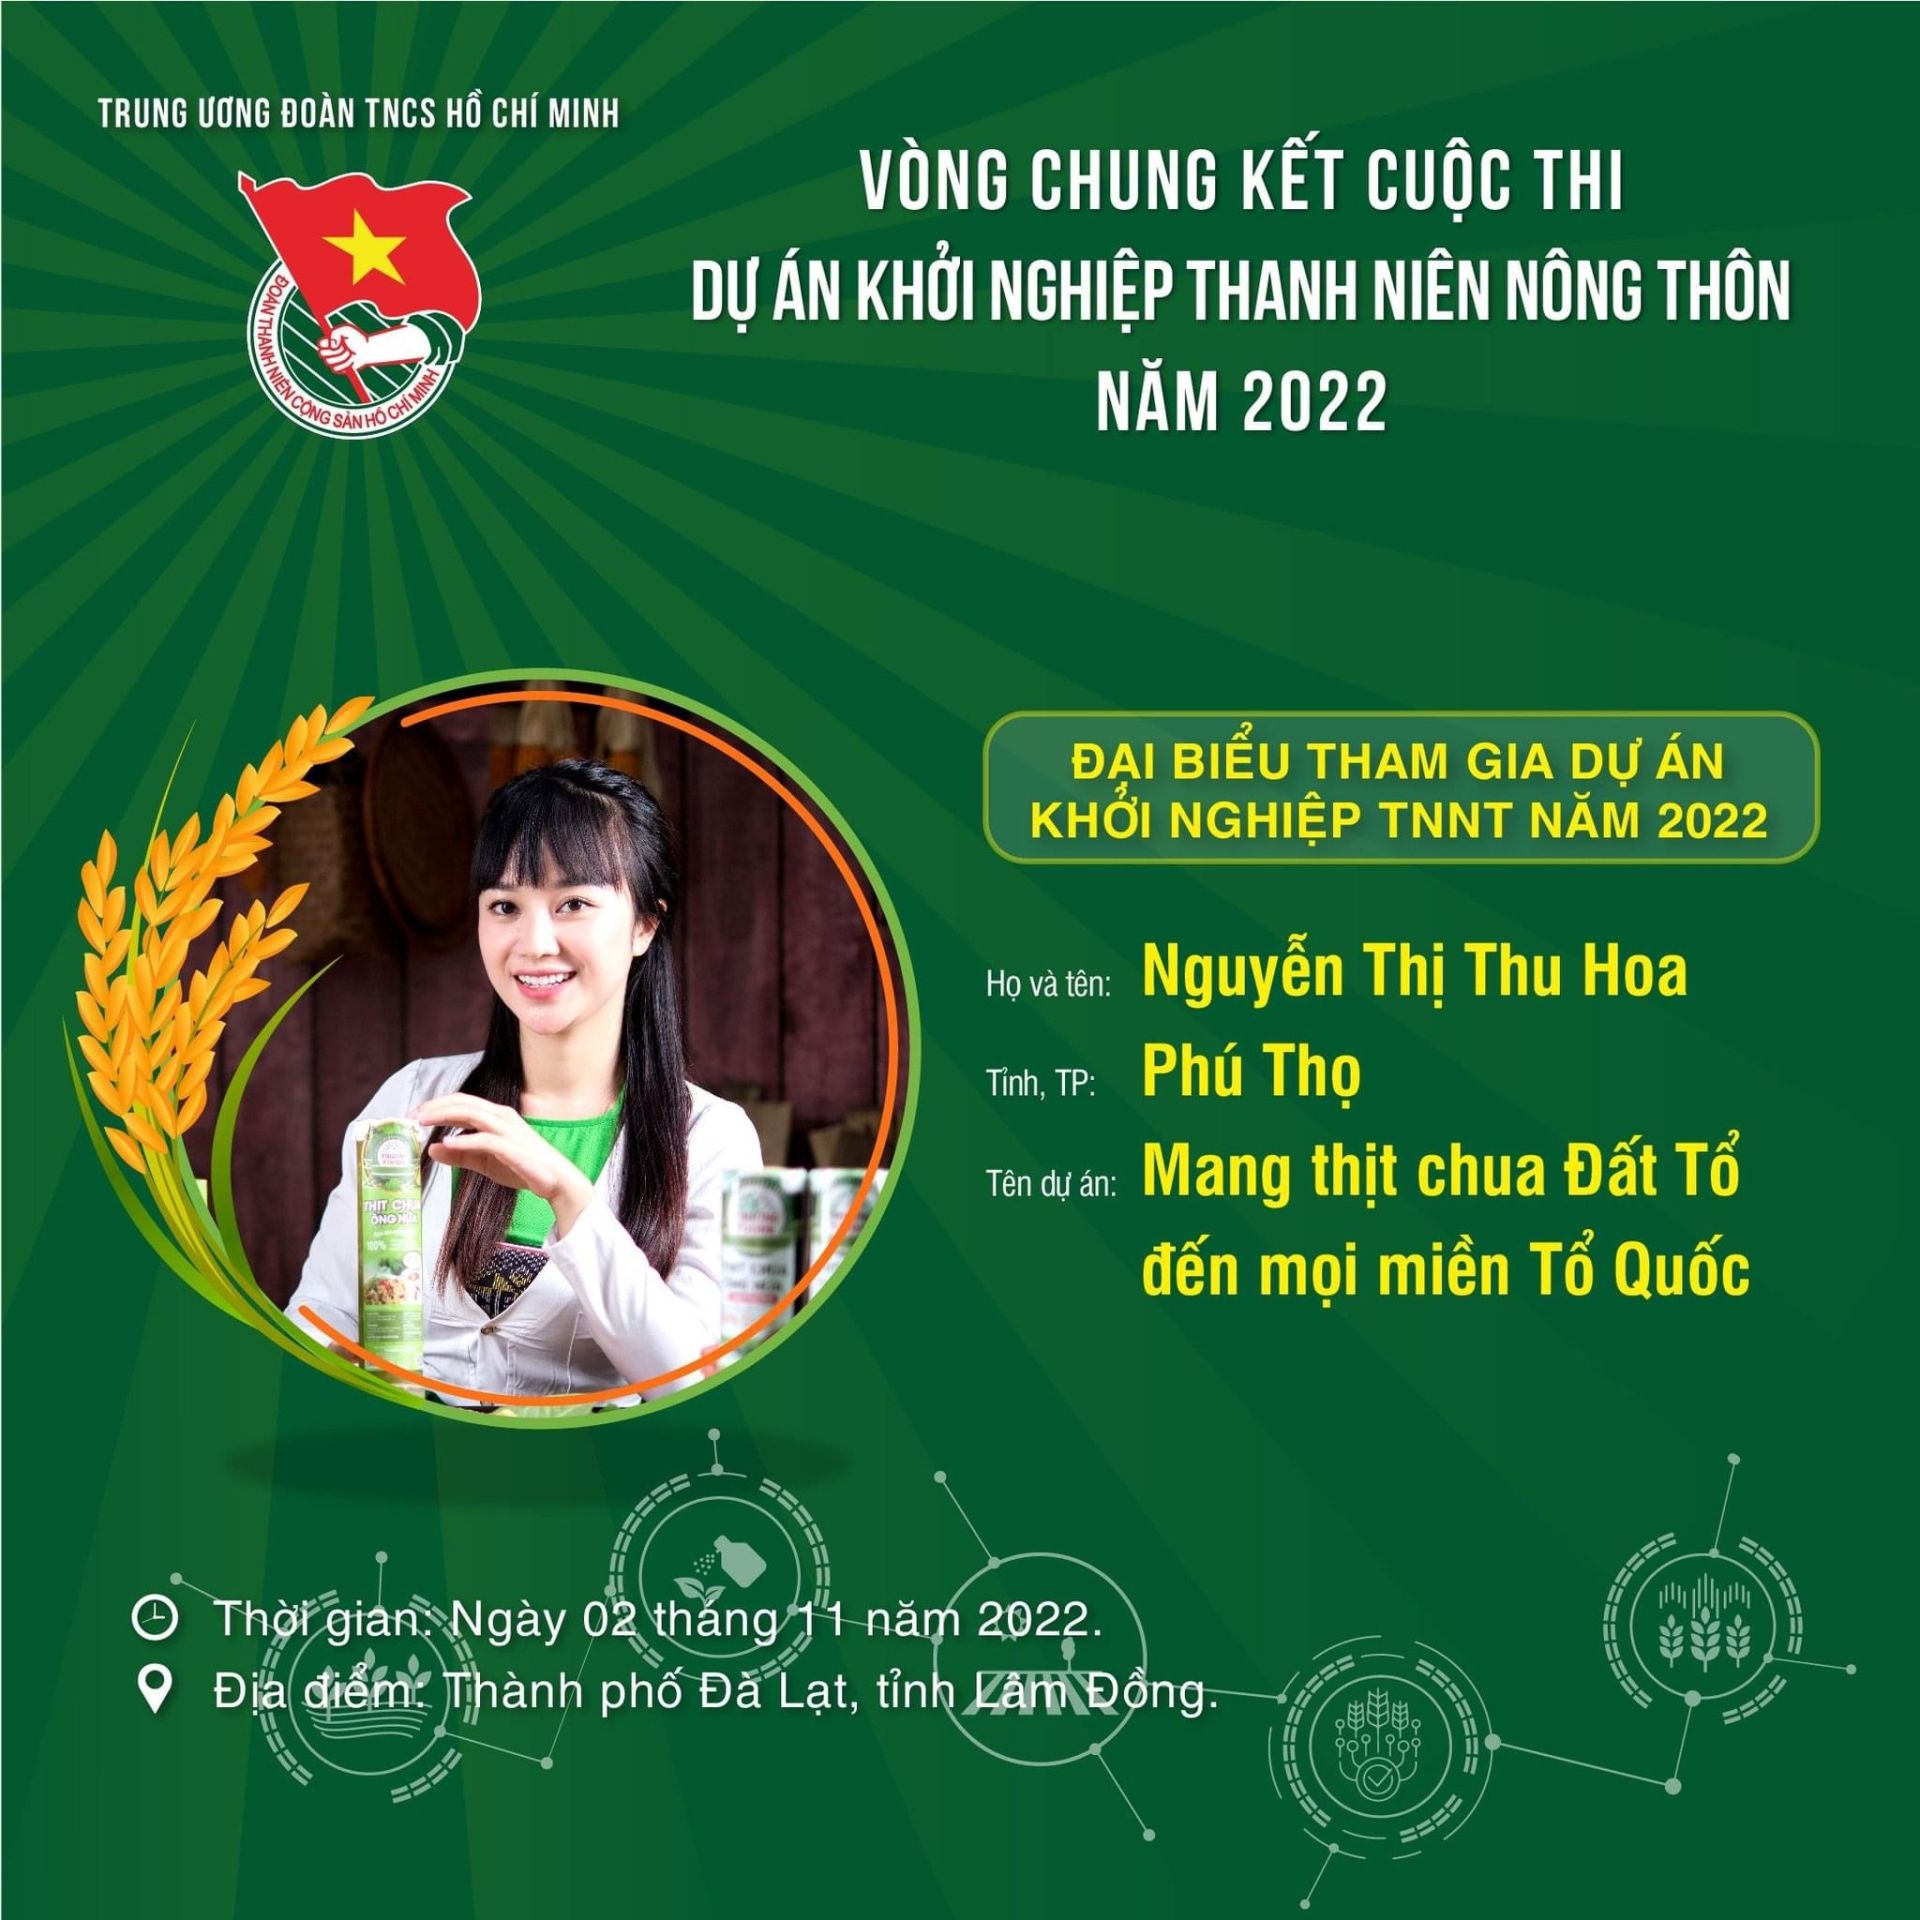 Giải Nhất thuộc về Dự án “Mang thịt chua Đất Tổ đến mọi miền Tổ Quốc” của Nguyễn Thị Thu Hoa (tỉnh Phú Thọ)